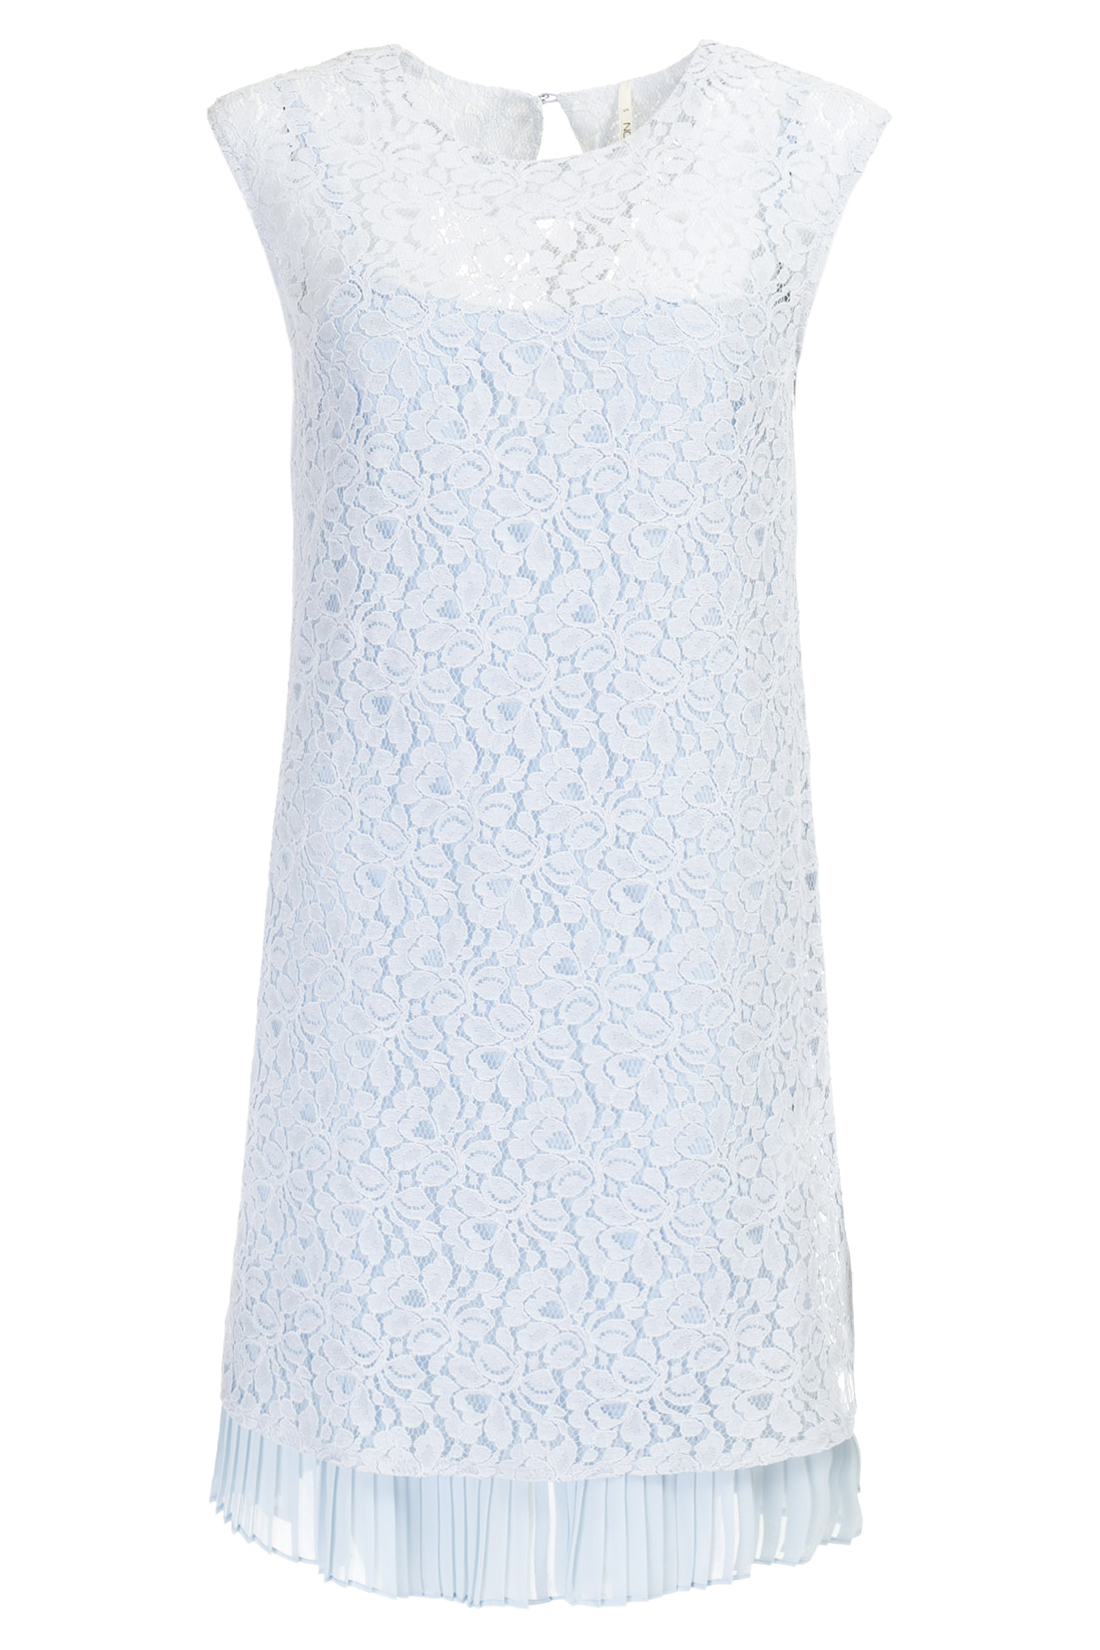 Платье из гипюра (арт. baon B457075), размер M, цвет голубой Платье из гипюра (арт. baon B457075) - фото 3